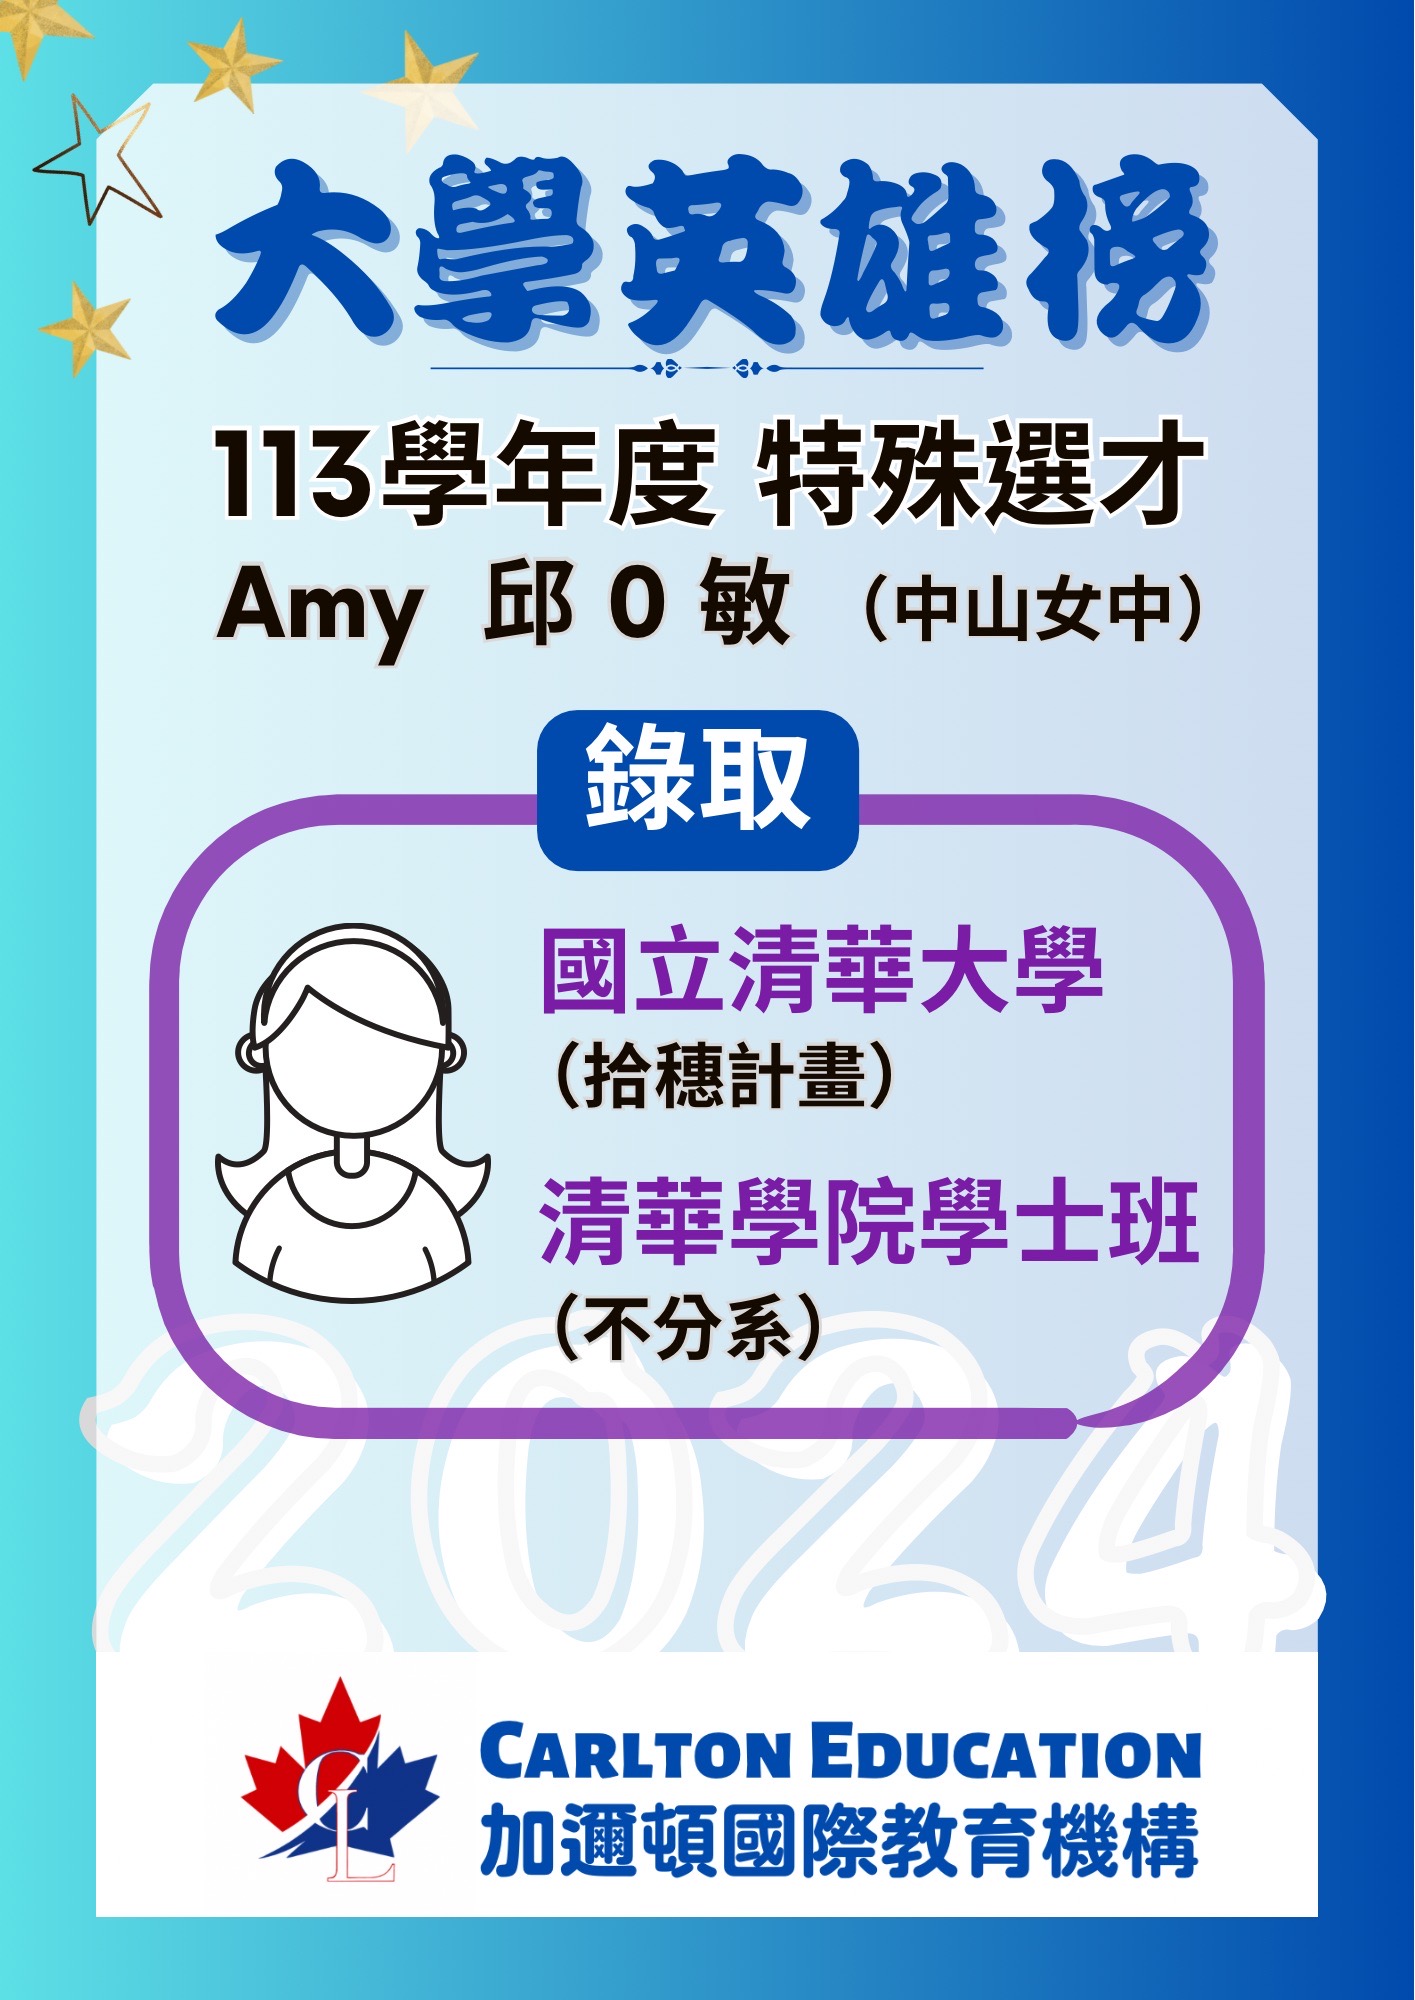 恭喜Amy特殊選才錄取清華大學